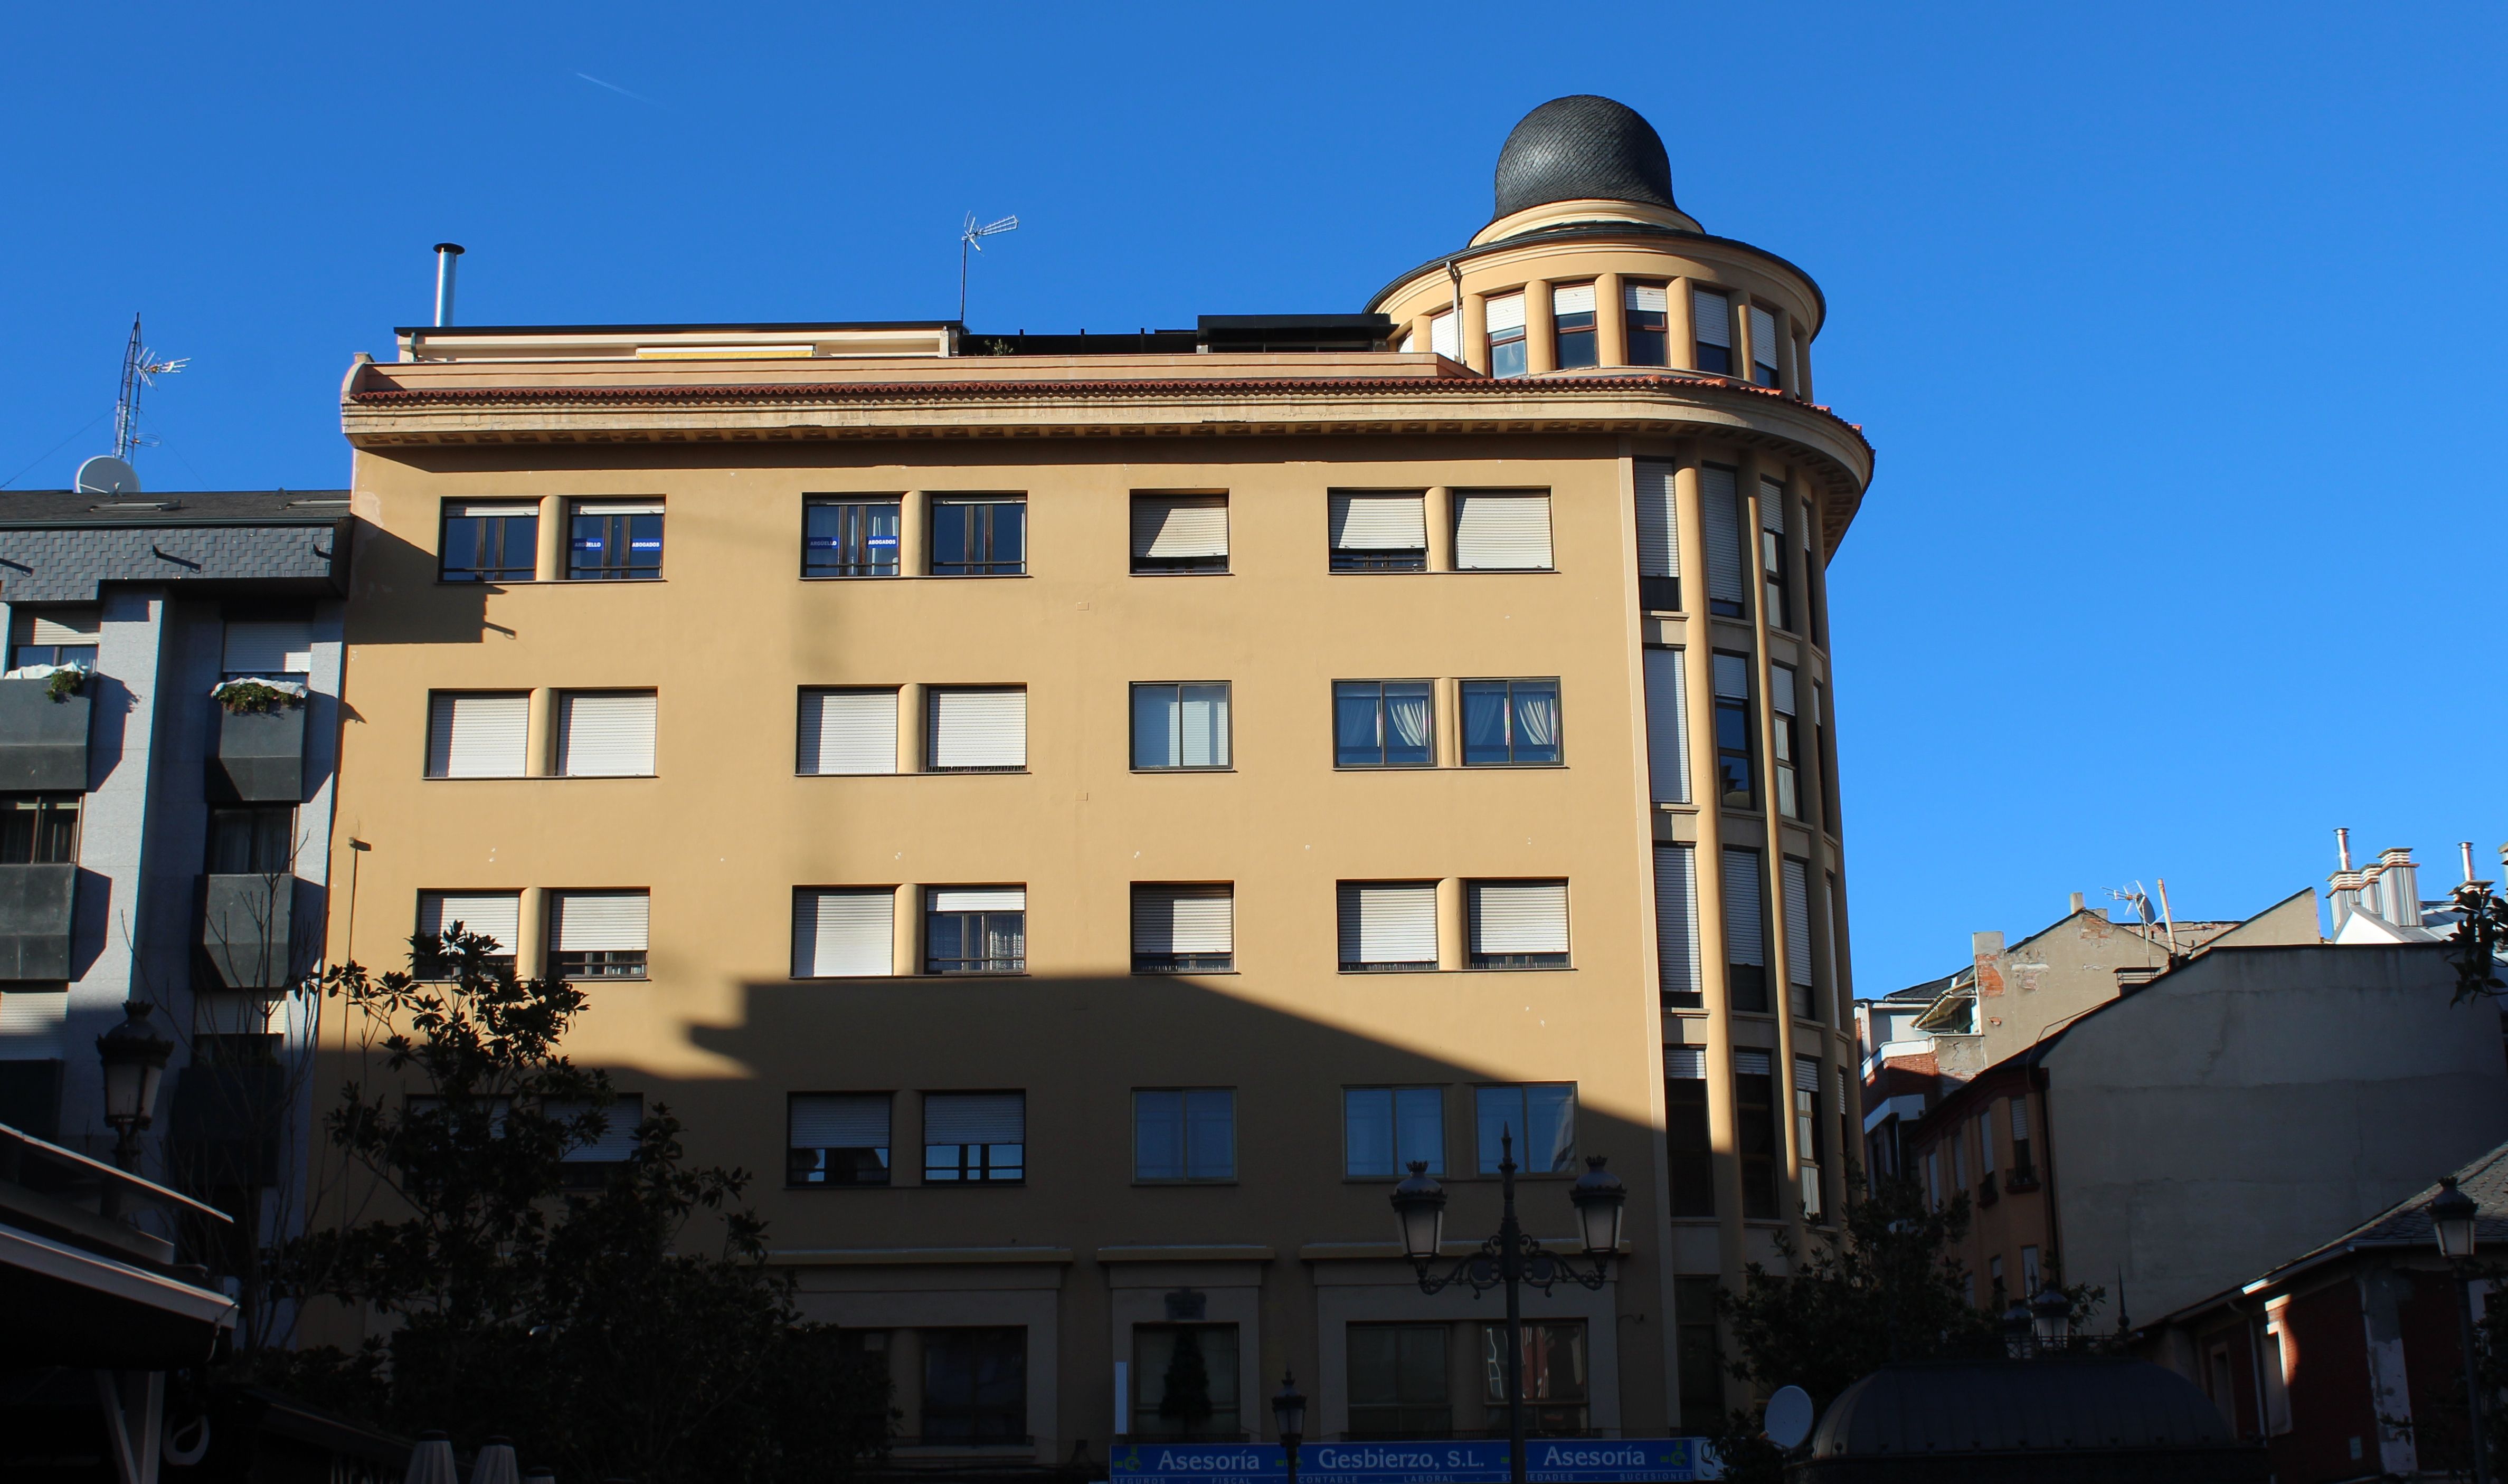 Edificio con chaflán redondeado, con su peculiar torreta, de ahí su nombre de Casa de la Campana.